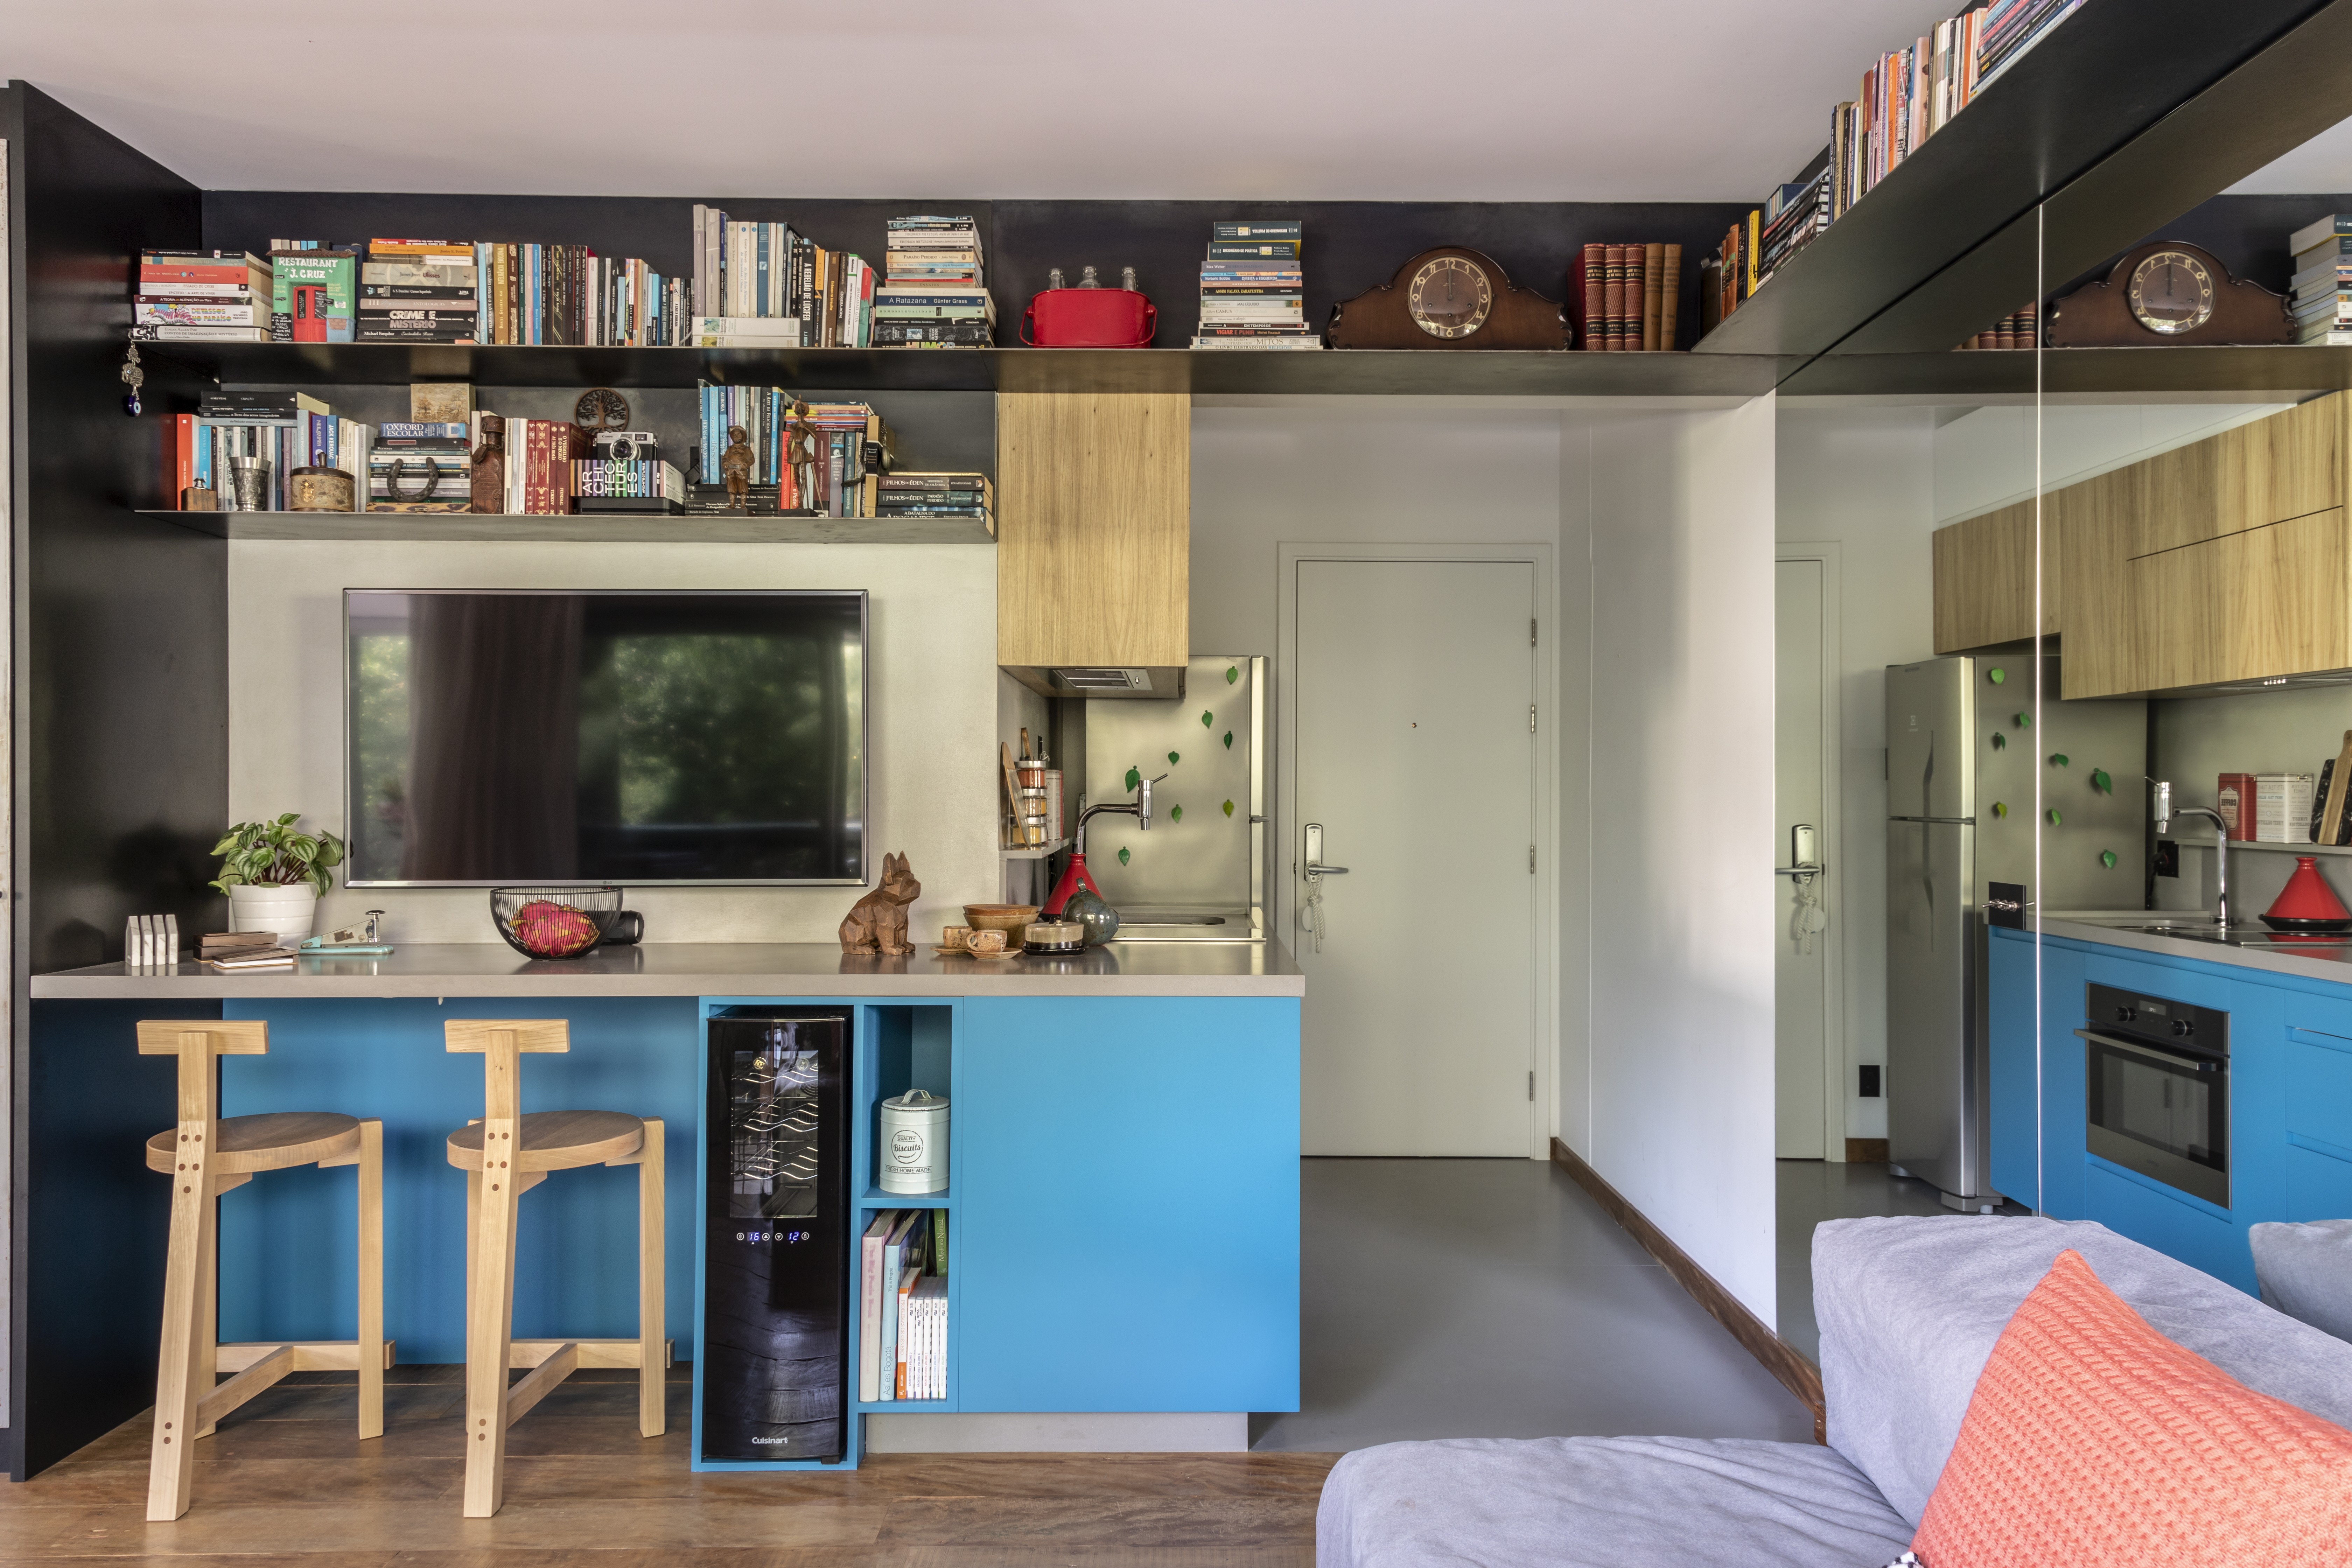 El banco Blue Caesarstone Concrete Sleek es un destaque en un departamento de 44 m² que prioriza la integración de los ambientes.  Los estantes para libros dan funcionalidad y decoran el apartamento.  El espejo en la pared ayuda a aumentar la sensación de espacio en la propiedad (Foto: Evelyn Muller)